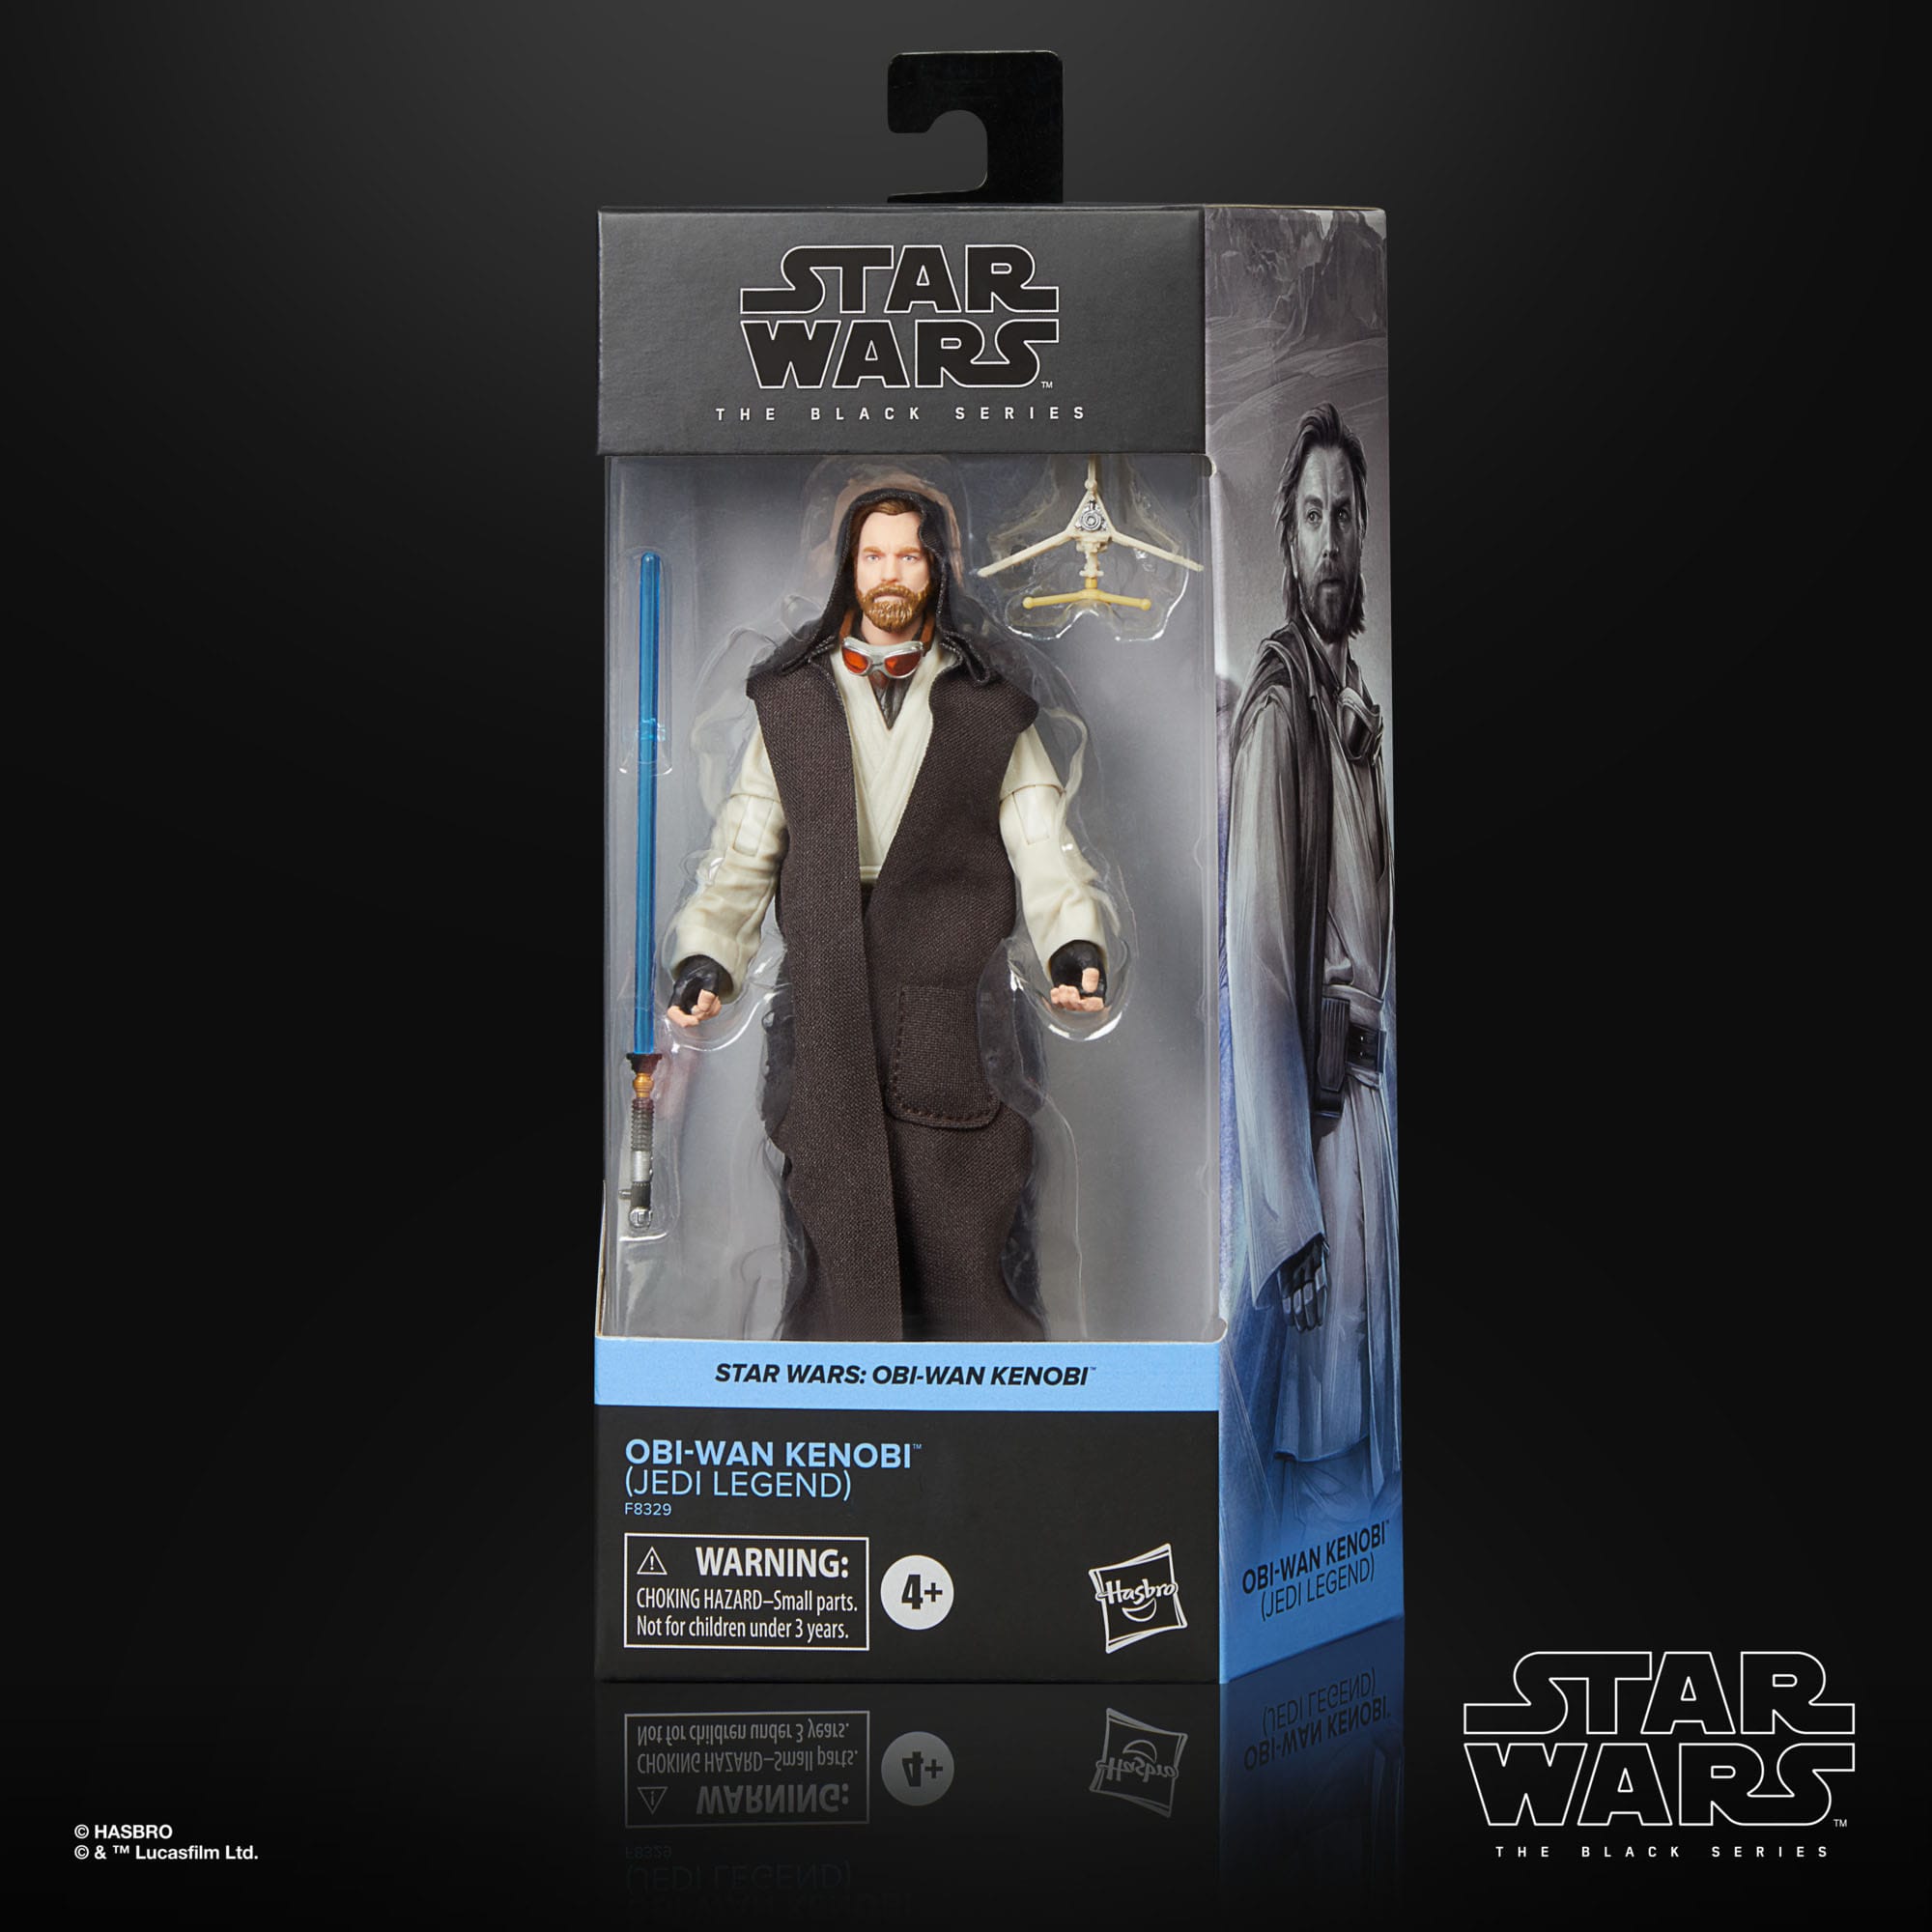 Star Wars: Obi-Wan Kenobi Black Series Actionfigur Obi-Wan Kenobi (Jedi Legend) 15 cm F83295L0 5010996176868